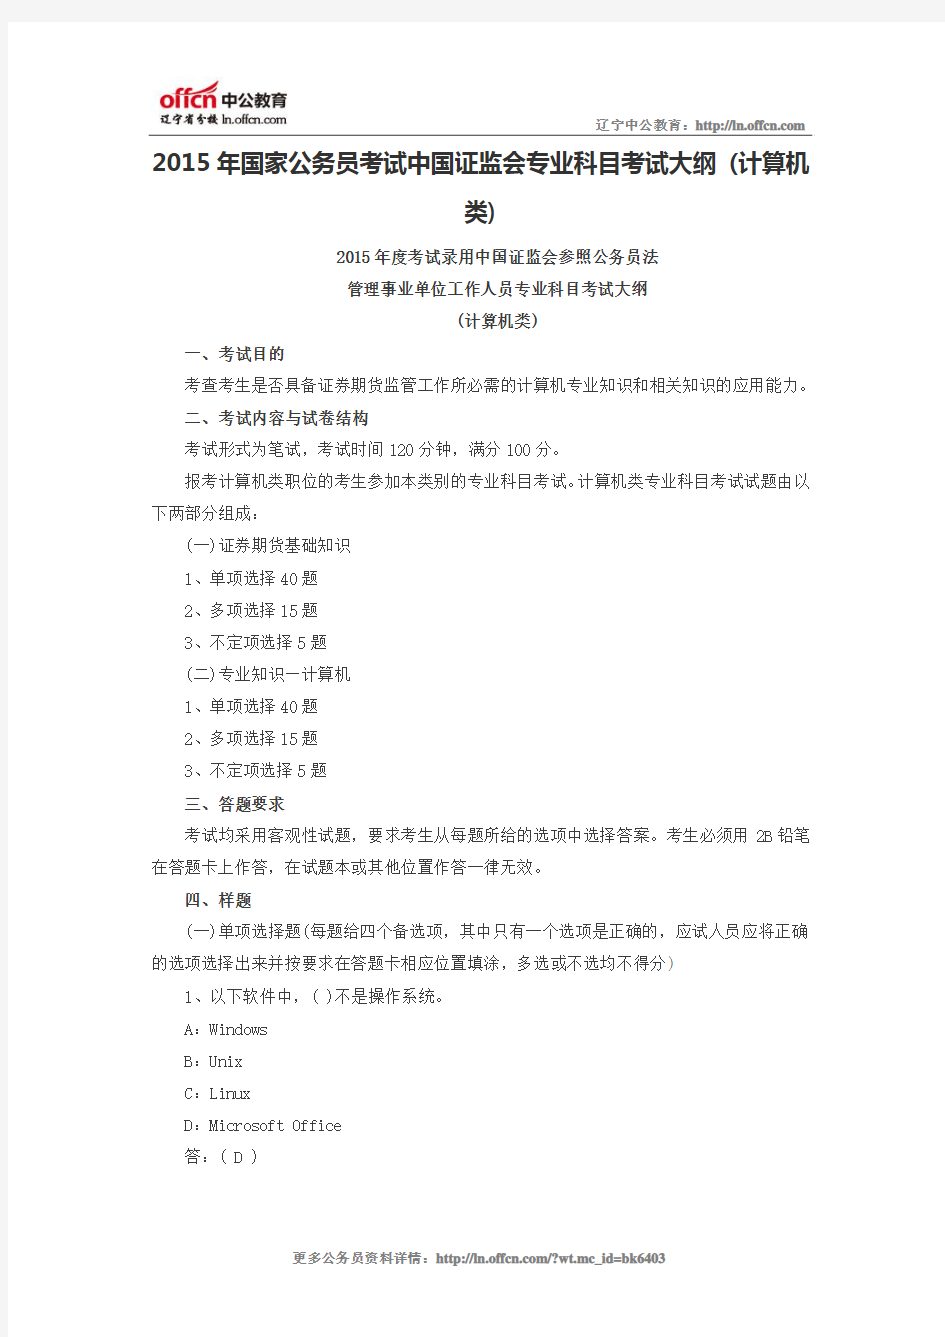 2015年国家公务员考试中国证监会专业科目考试大纲 (计算机类)